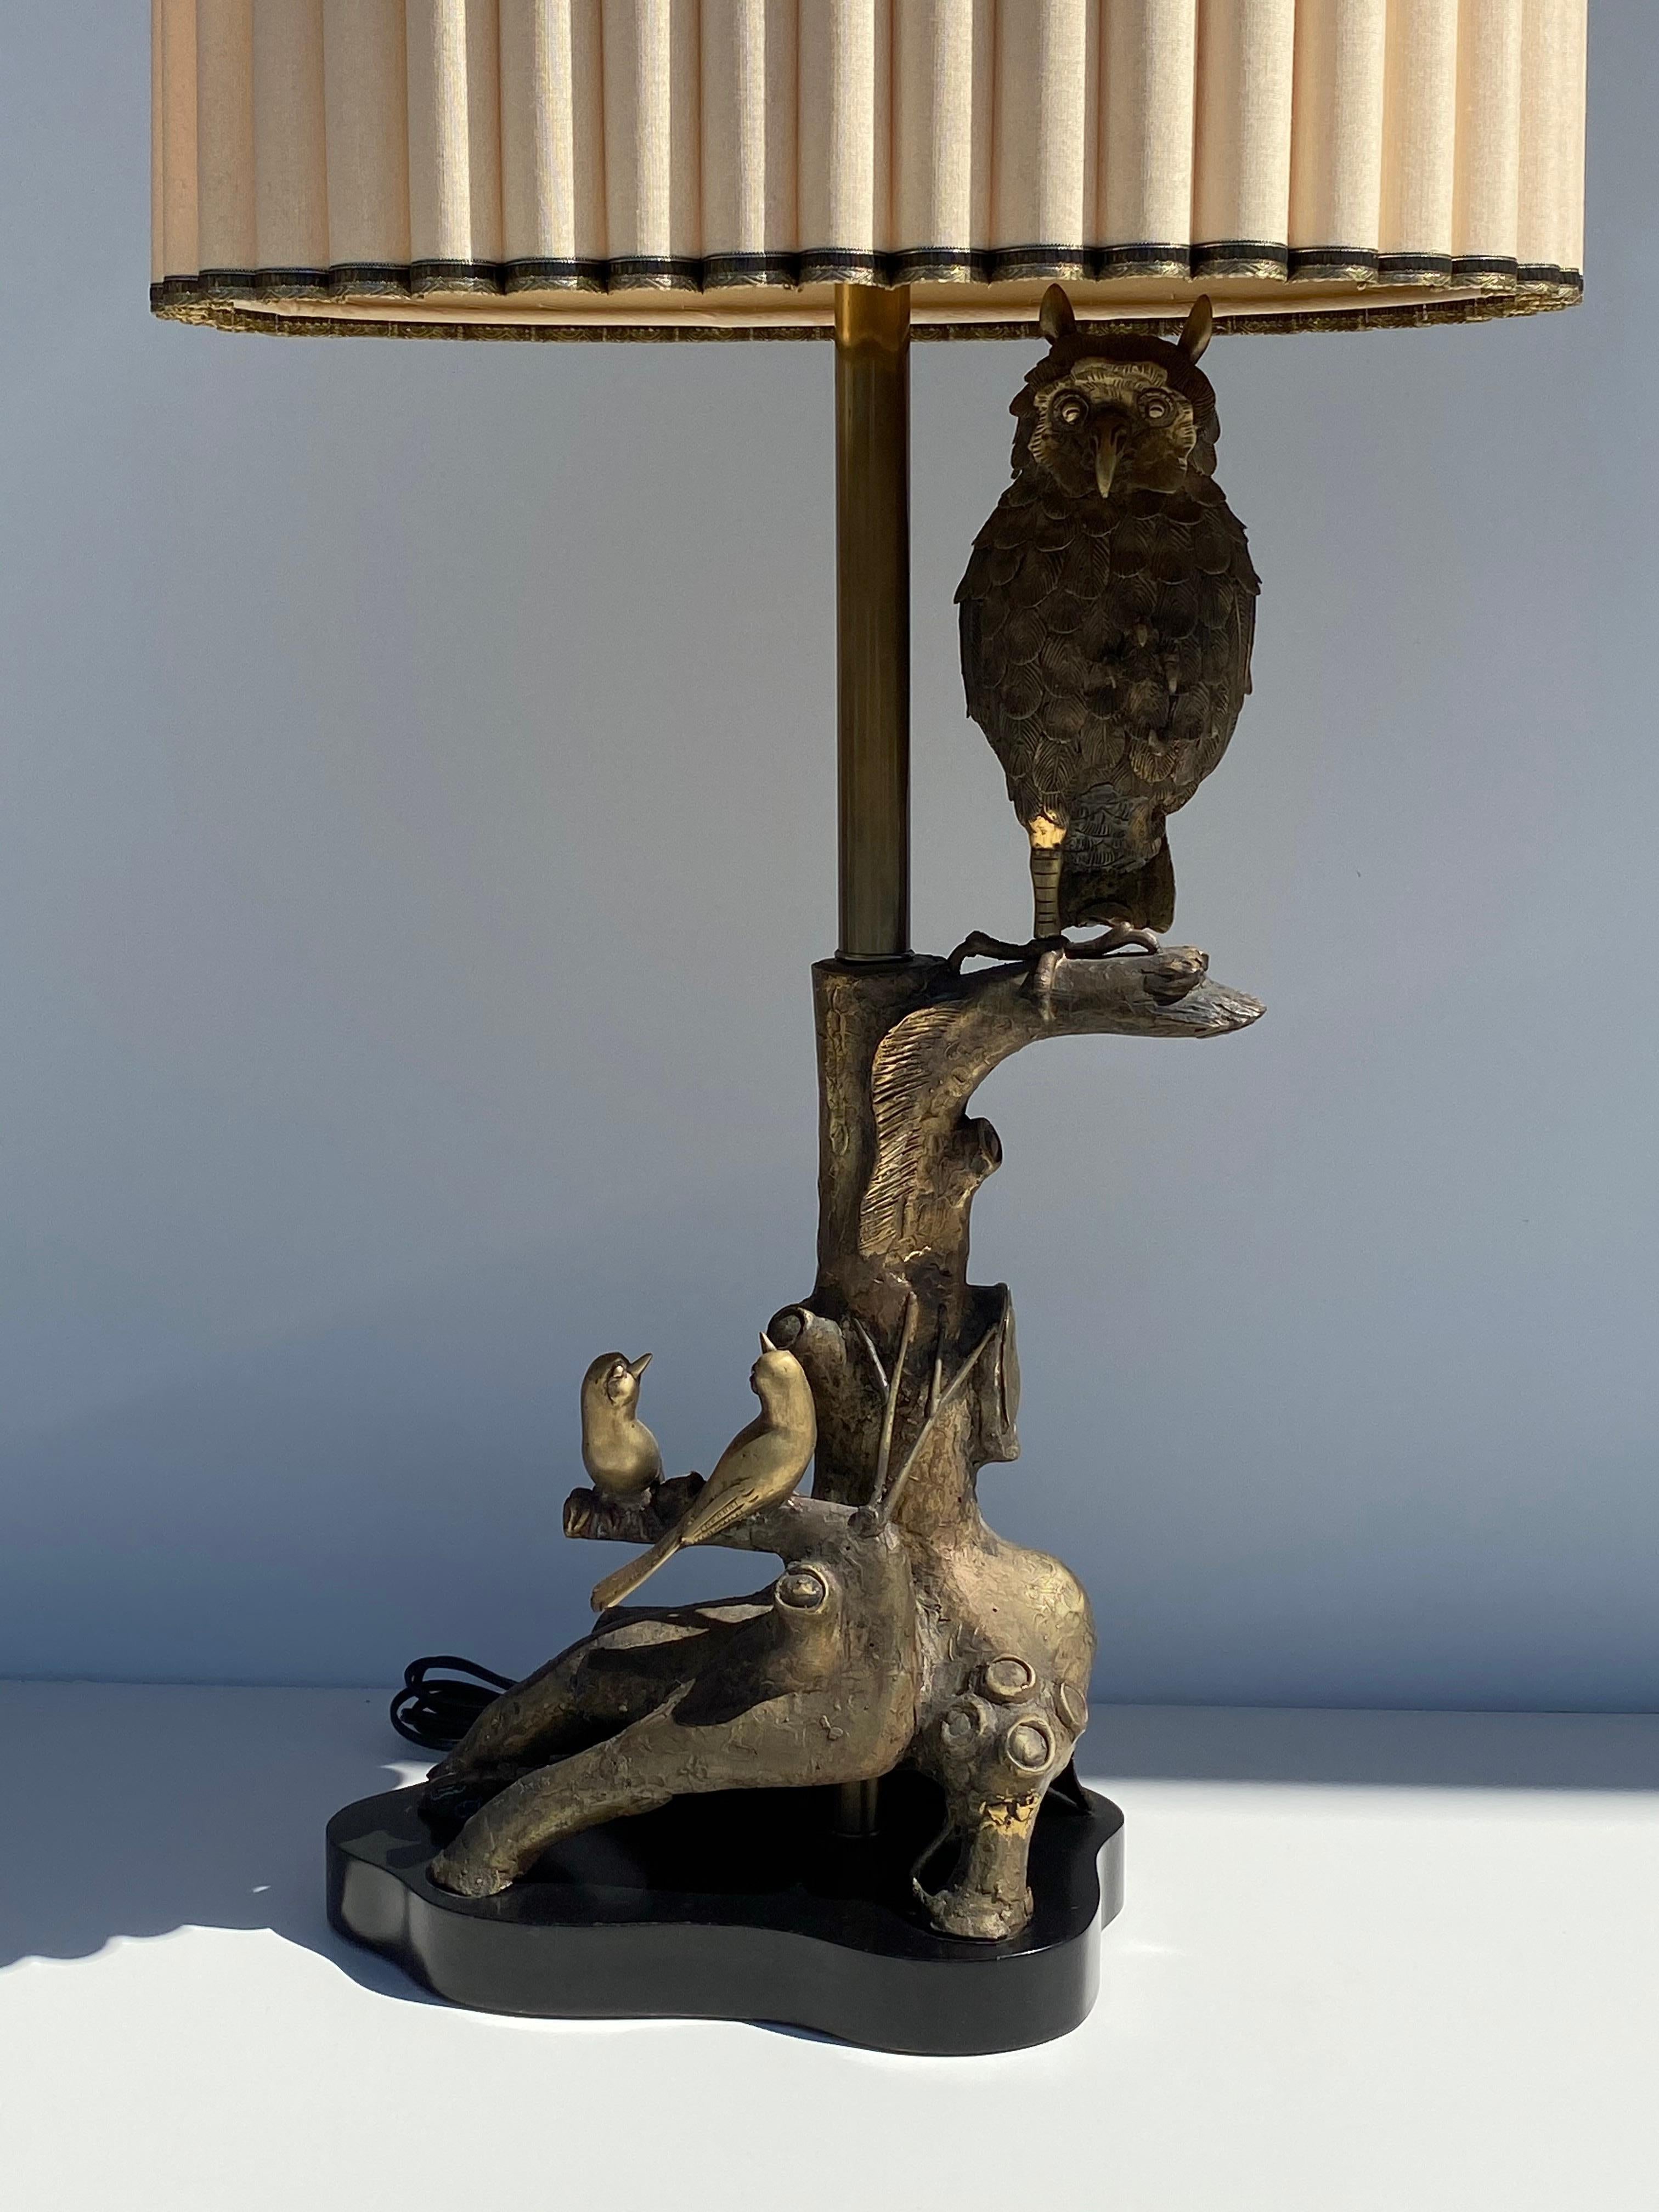 Patinierte Bronze Eule Lampe mit Vögeln und Baumstamm Details von Marbro mit Original-Schatten, die 17 